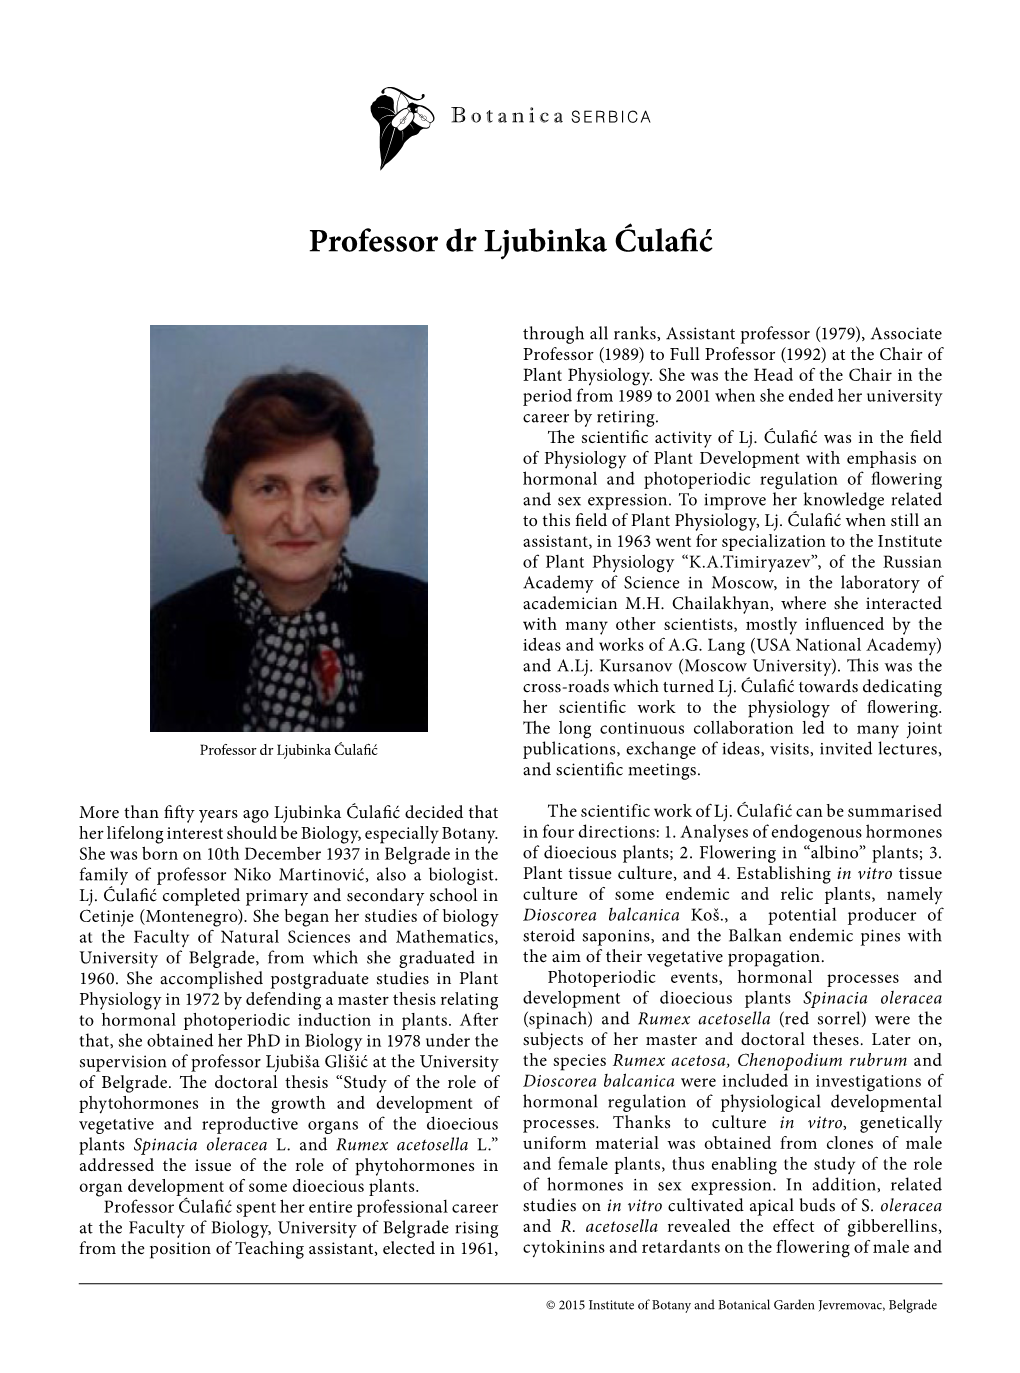 Professor Dr Ljubinka Ćulafić